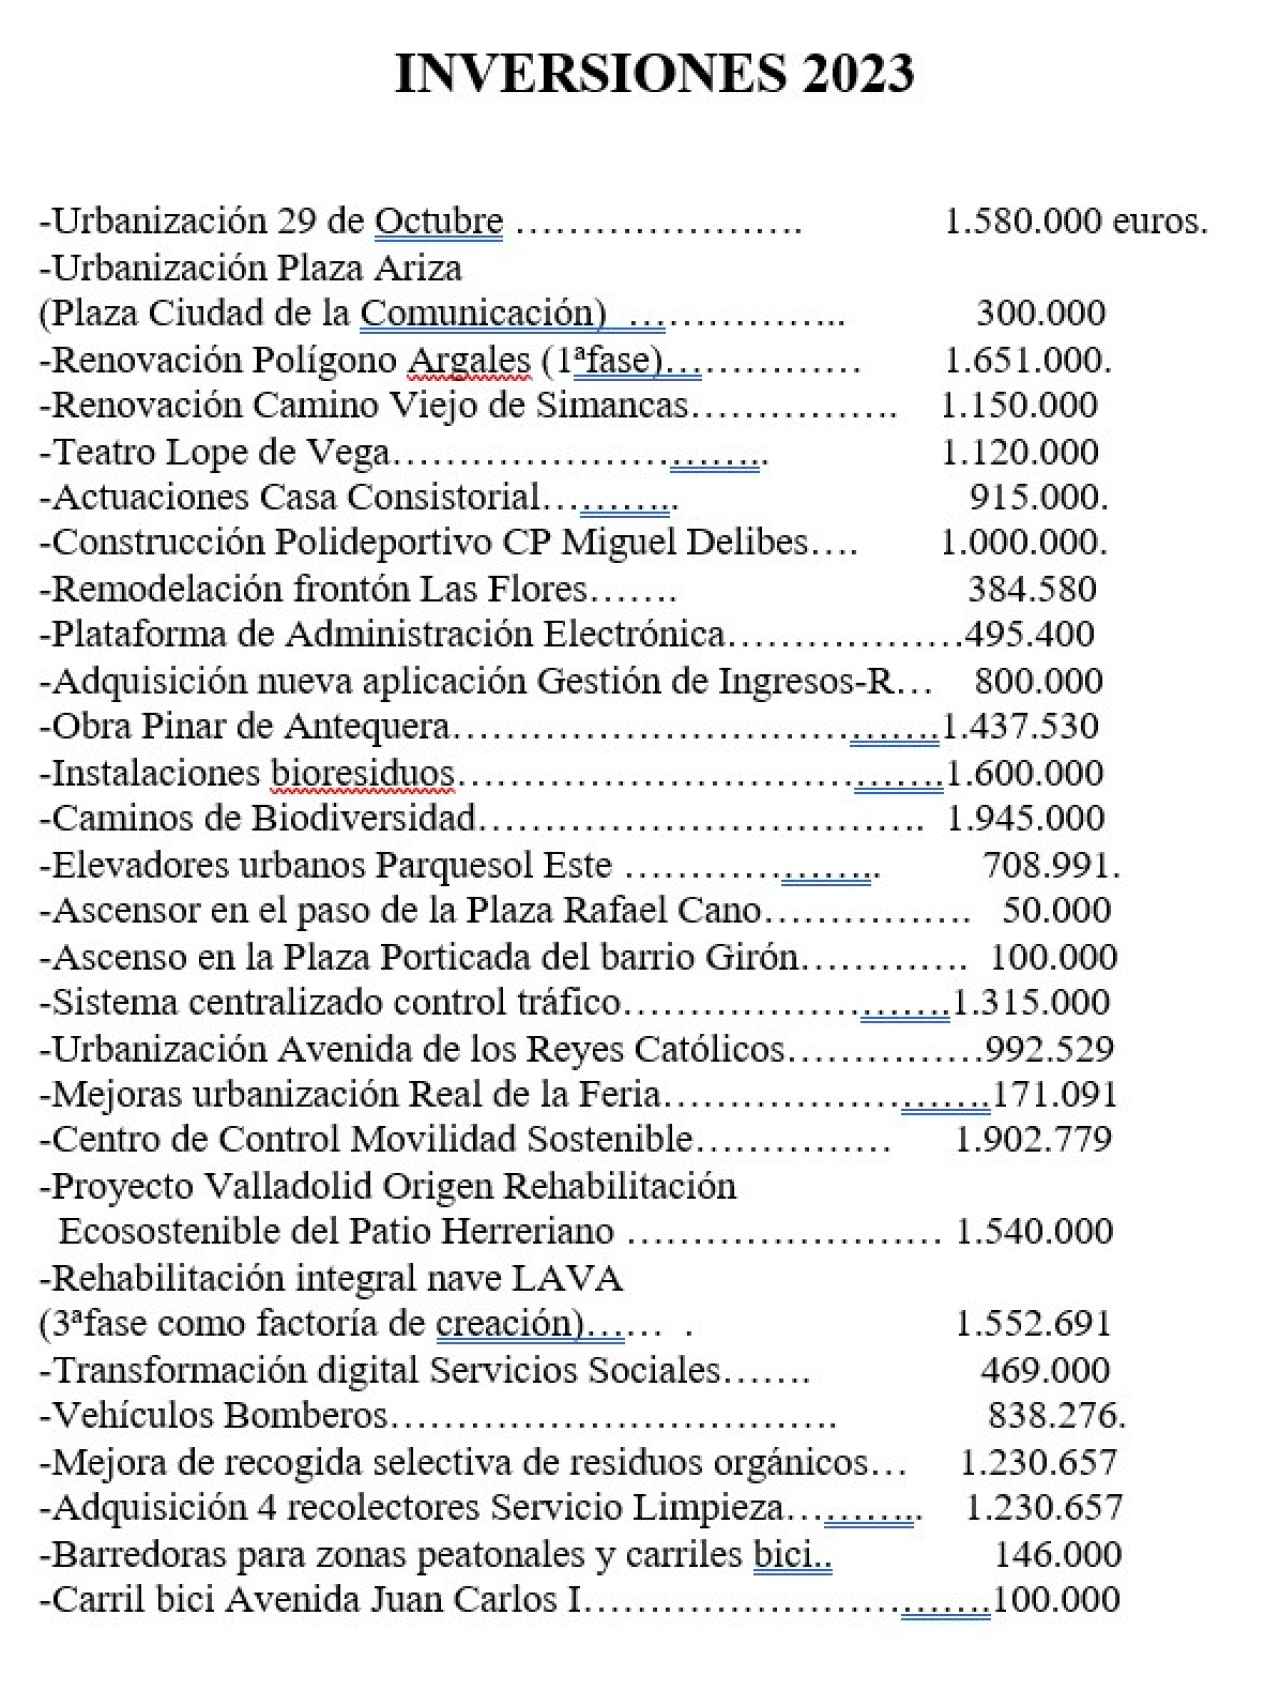 Inversiones para el año 2023 previstas por el Ayuntamiento de Valladolid